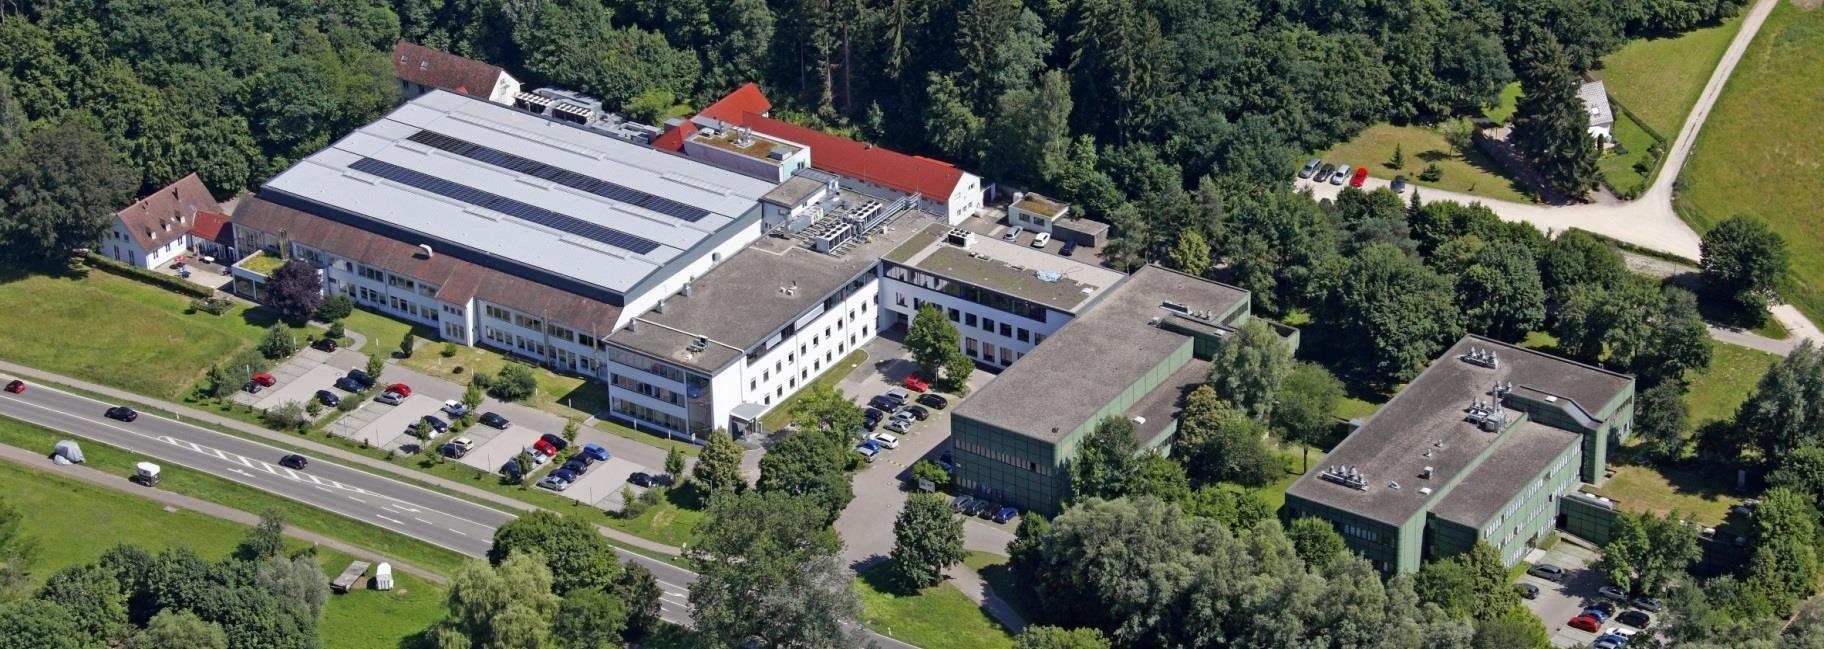 Europas größte Textilforschungseinrichtung Deutsche Institute für Textil- und Faserforschung Denkendorf (DITF) 2 4 3 1 1 Institut für Textilchemie